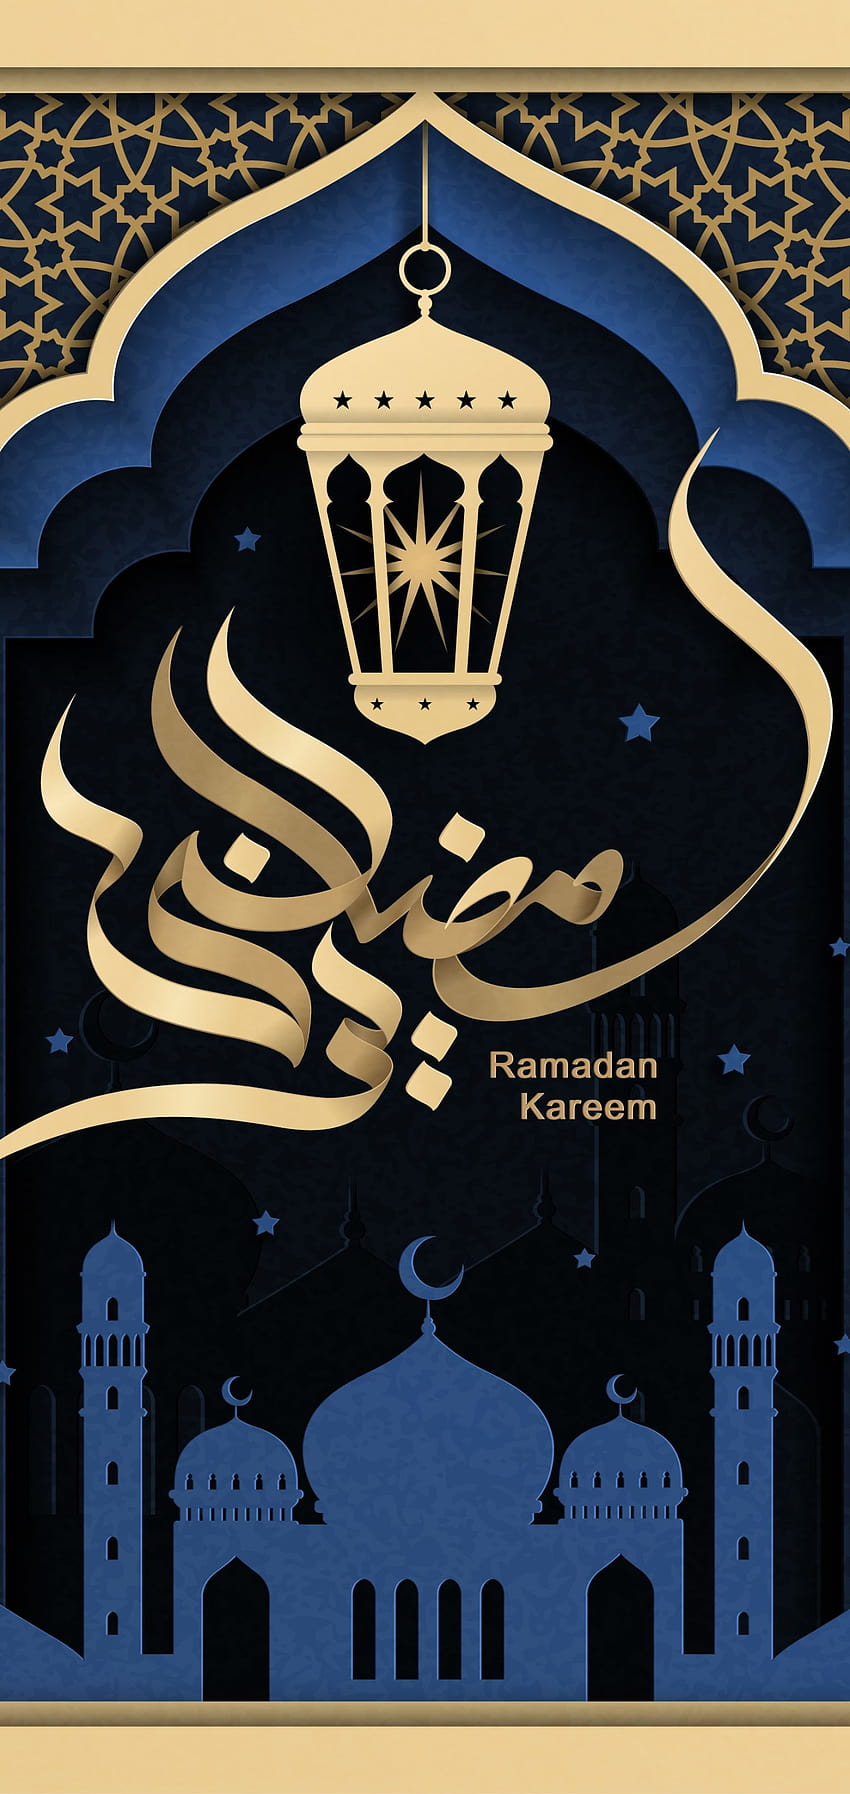 Ramadan Wallpaper Images  Free Download on Freepik